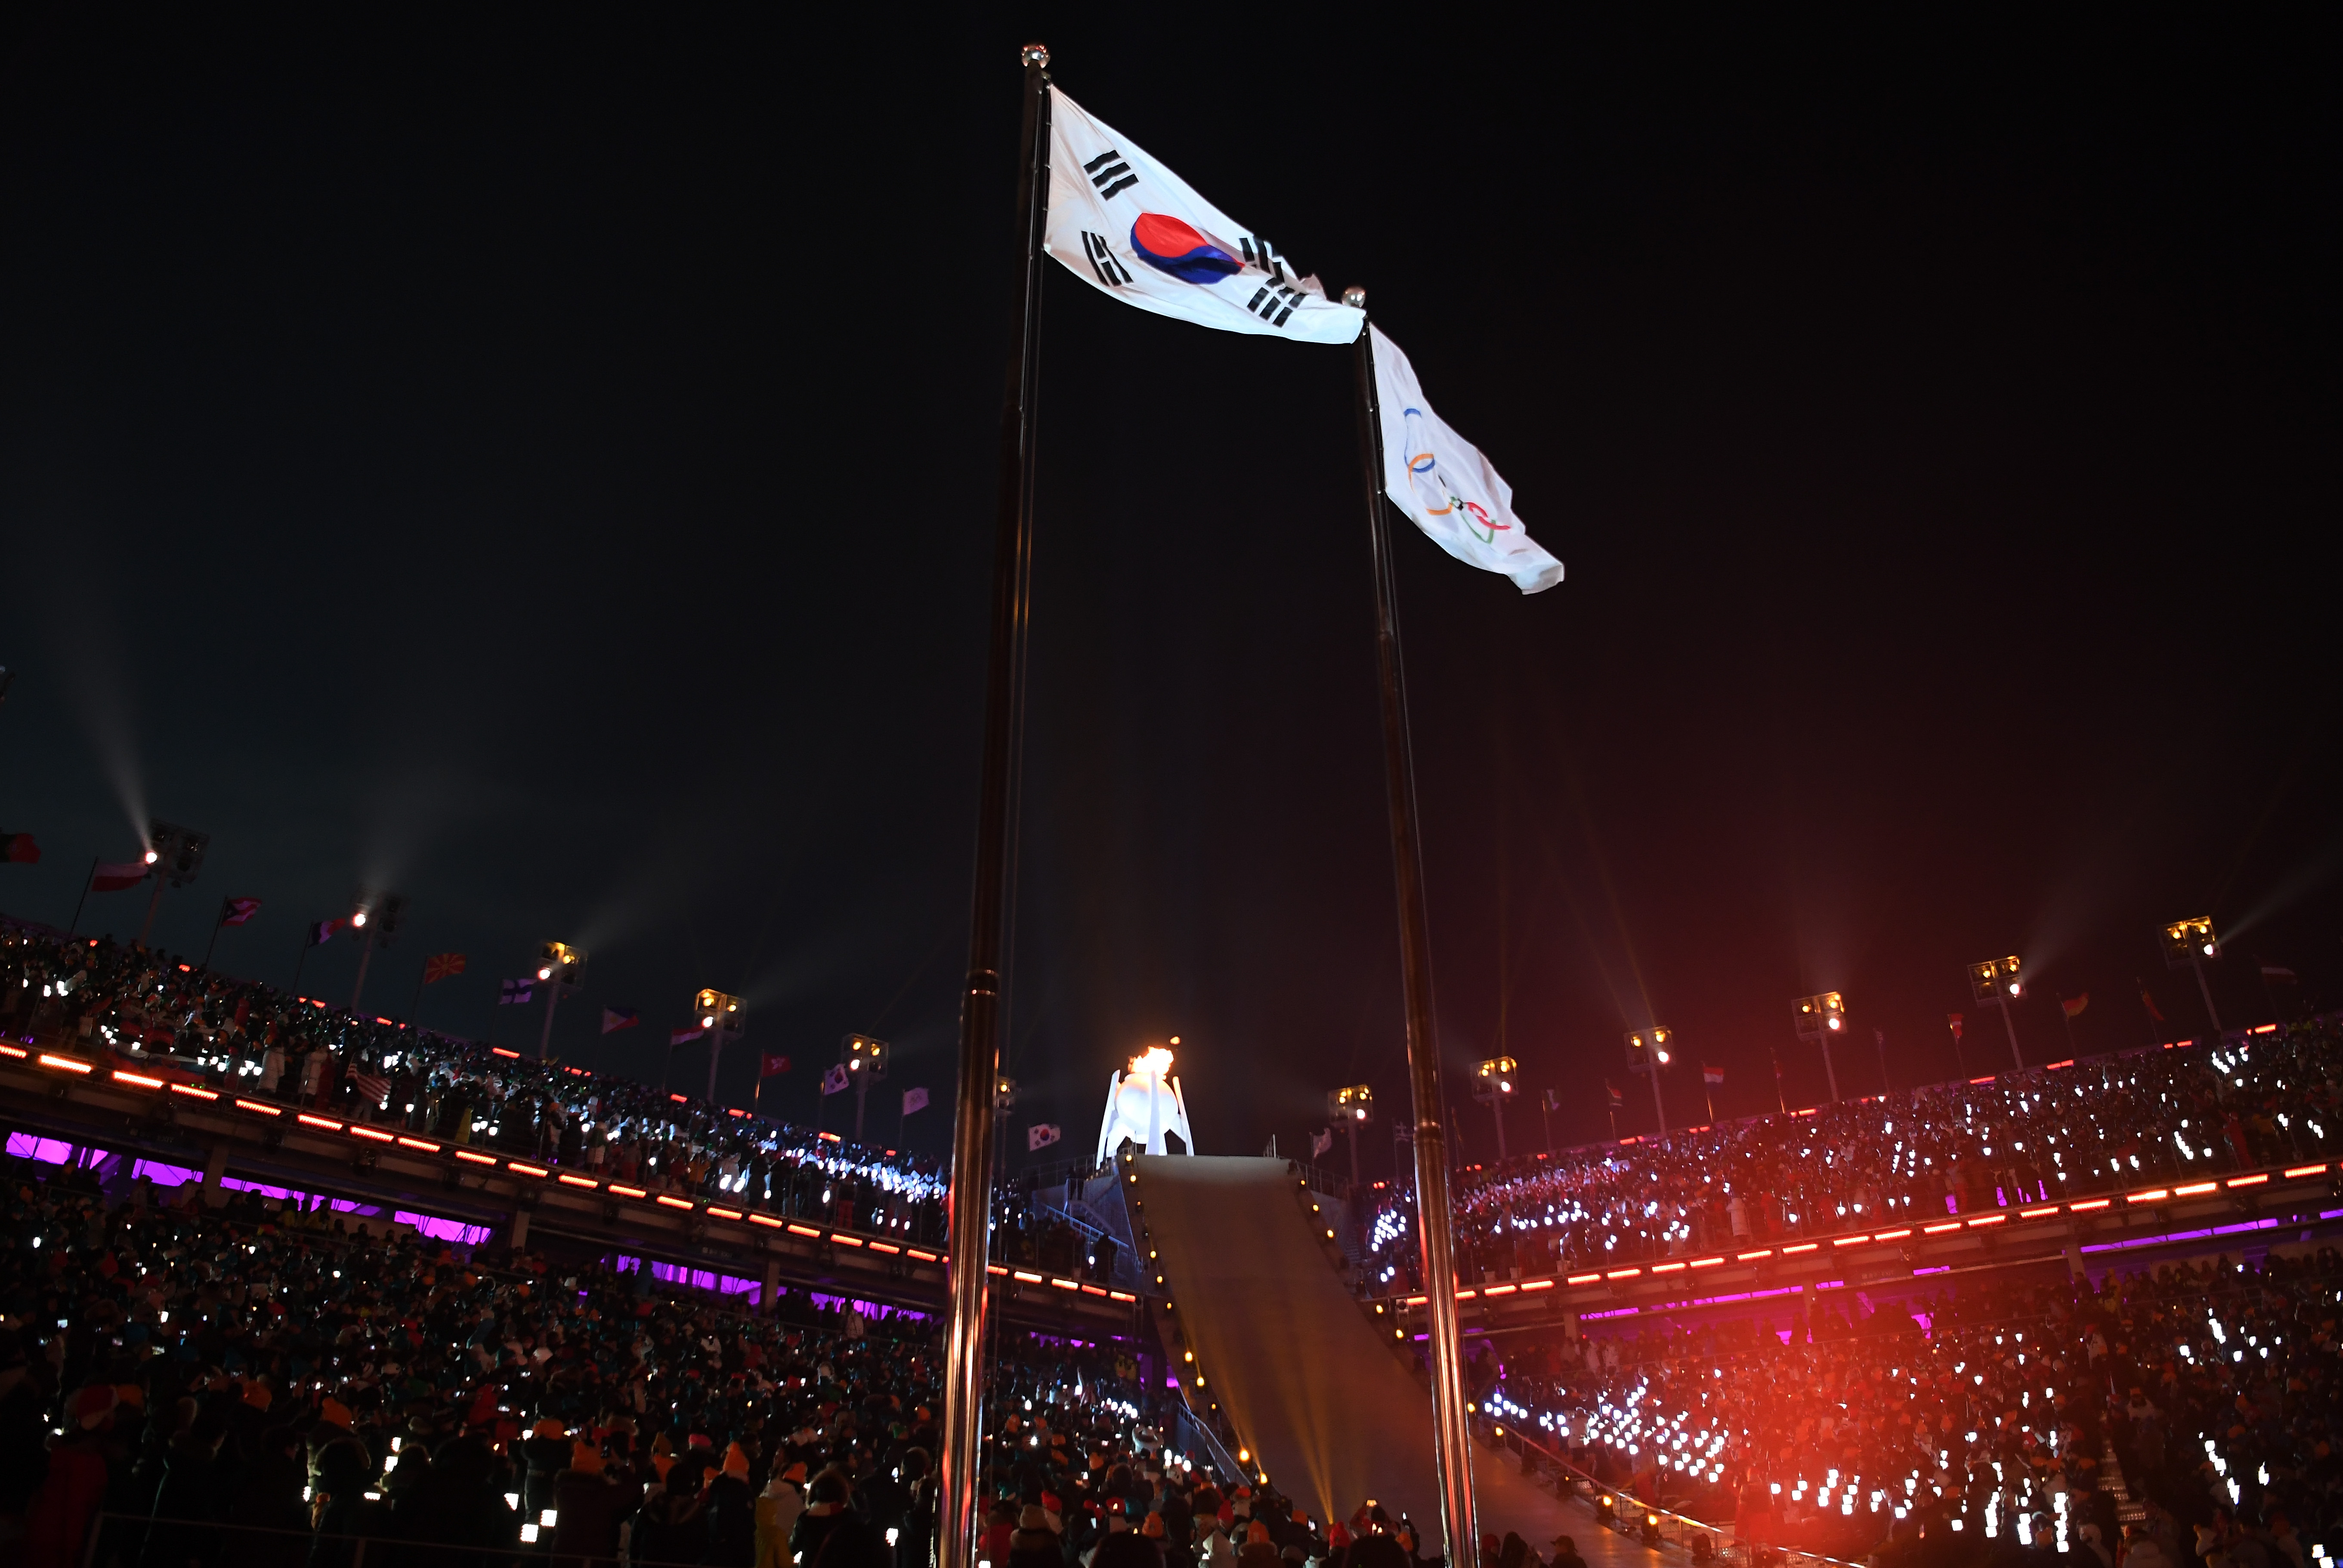 Стартът на Олимпиадата в Пьонгчанг бе даден с впечатляваща церемония по откриване на 23-те Зимни игри, която продължи два часа и остави без дъх близо 30 000 зрители на специално построения за събитието стадион, както и милиони пред телевизионните екрани в повече от 200 държави. Арената във форма на петоъгълник с пет трибуни посрещна 92 делегации, които участваха в парада на спортистите. Знаменосец на българската бе сноубордистът Радослав Янков.